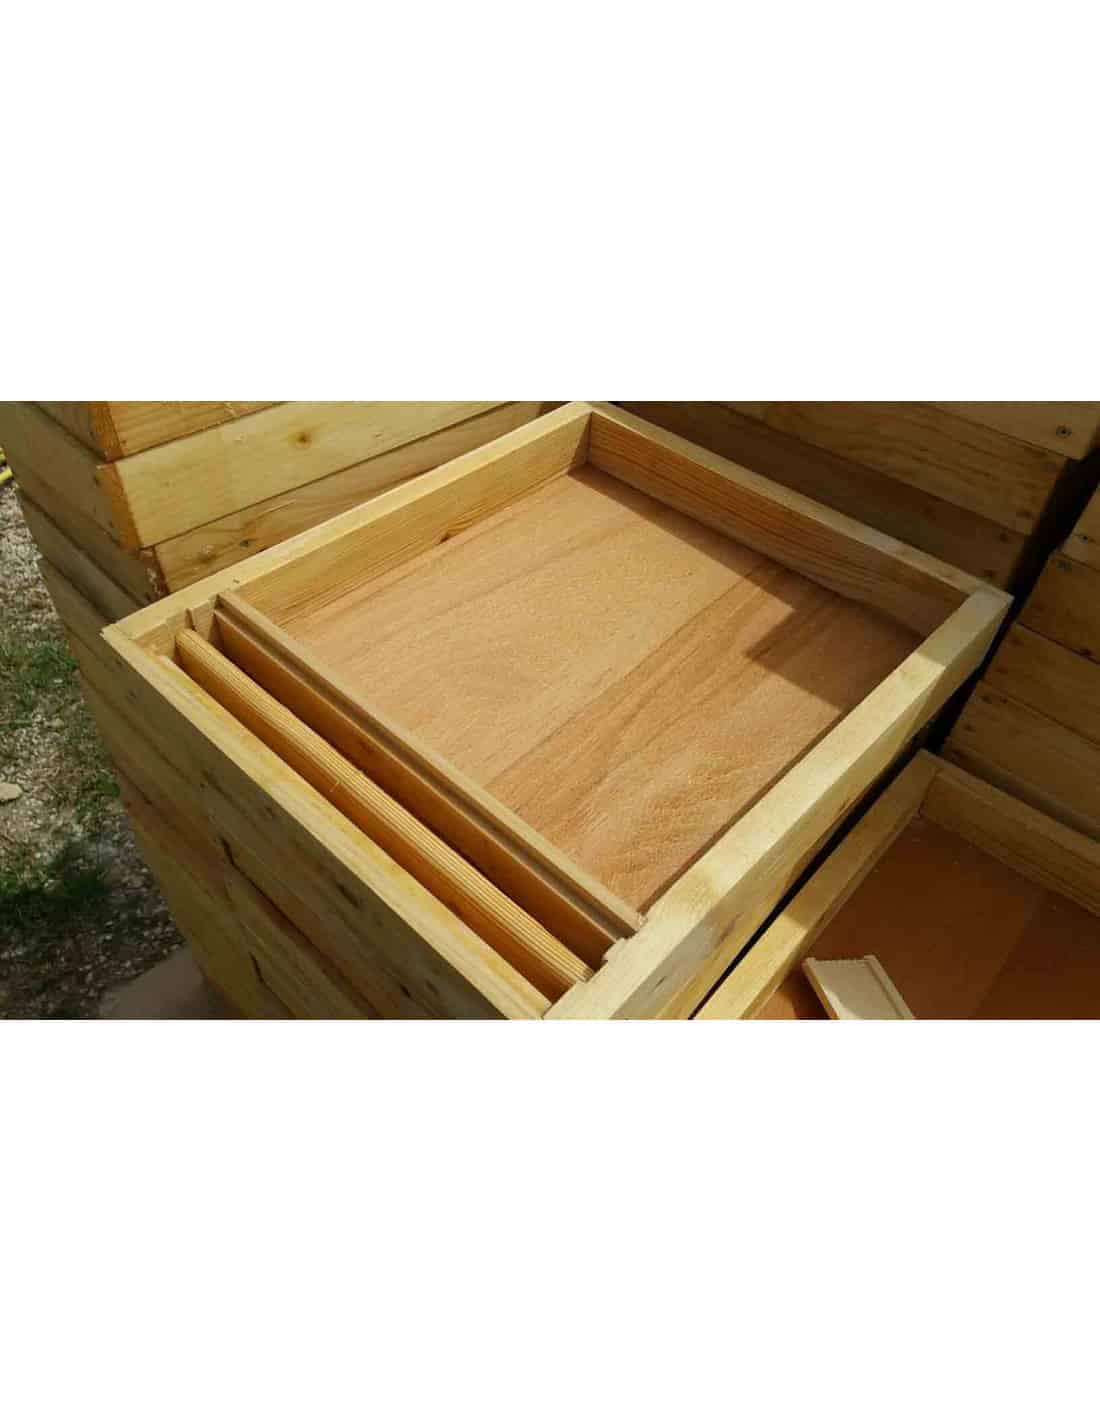 Nourrisseurs pour ruches : Nourrisseur couvre-cadres en bois paraffiné pour  ruchette 5 cadres - 220 mm - Hauteur 7 cm - Icko Apiculture